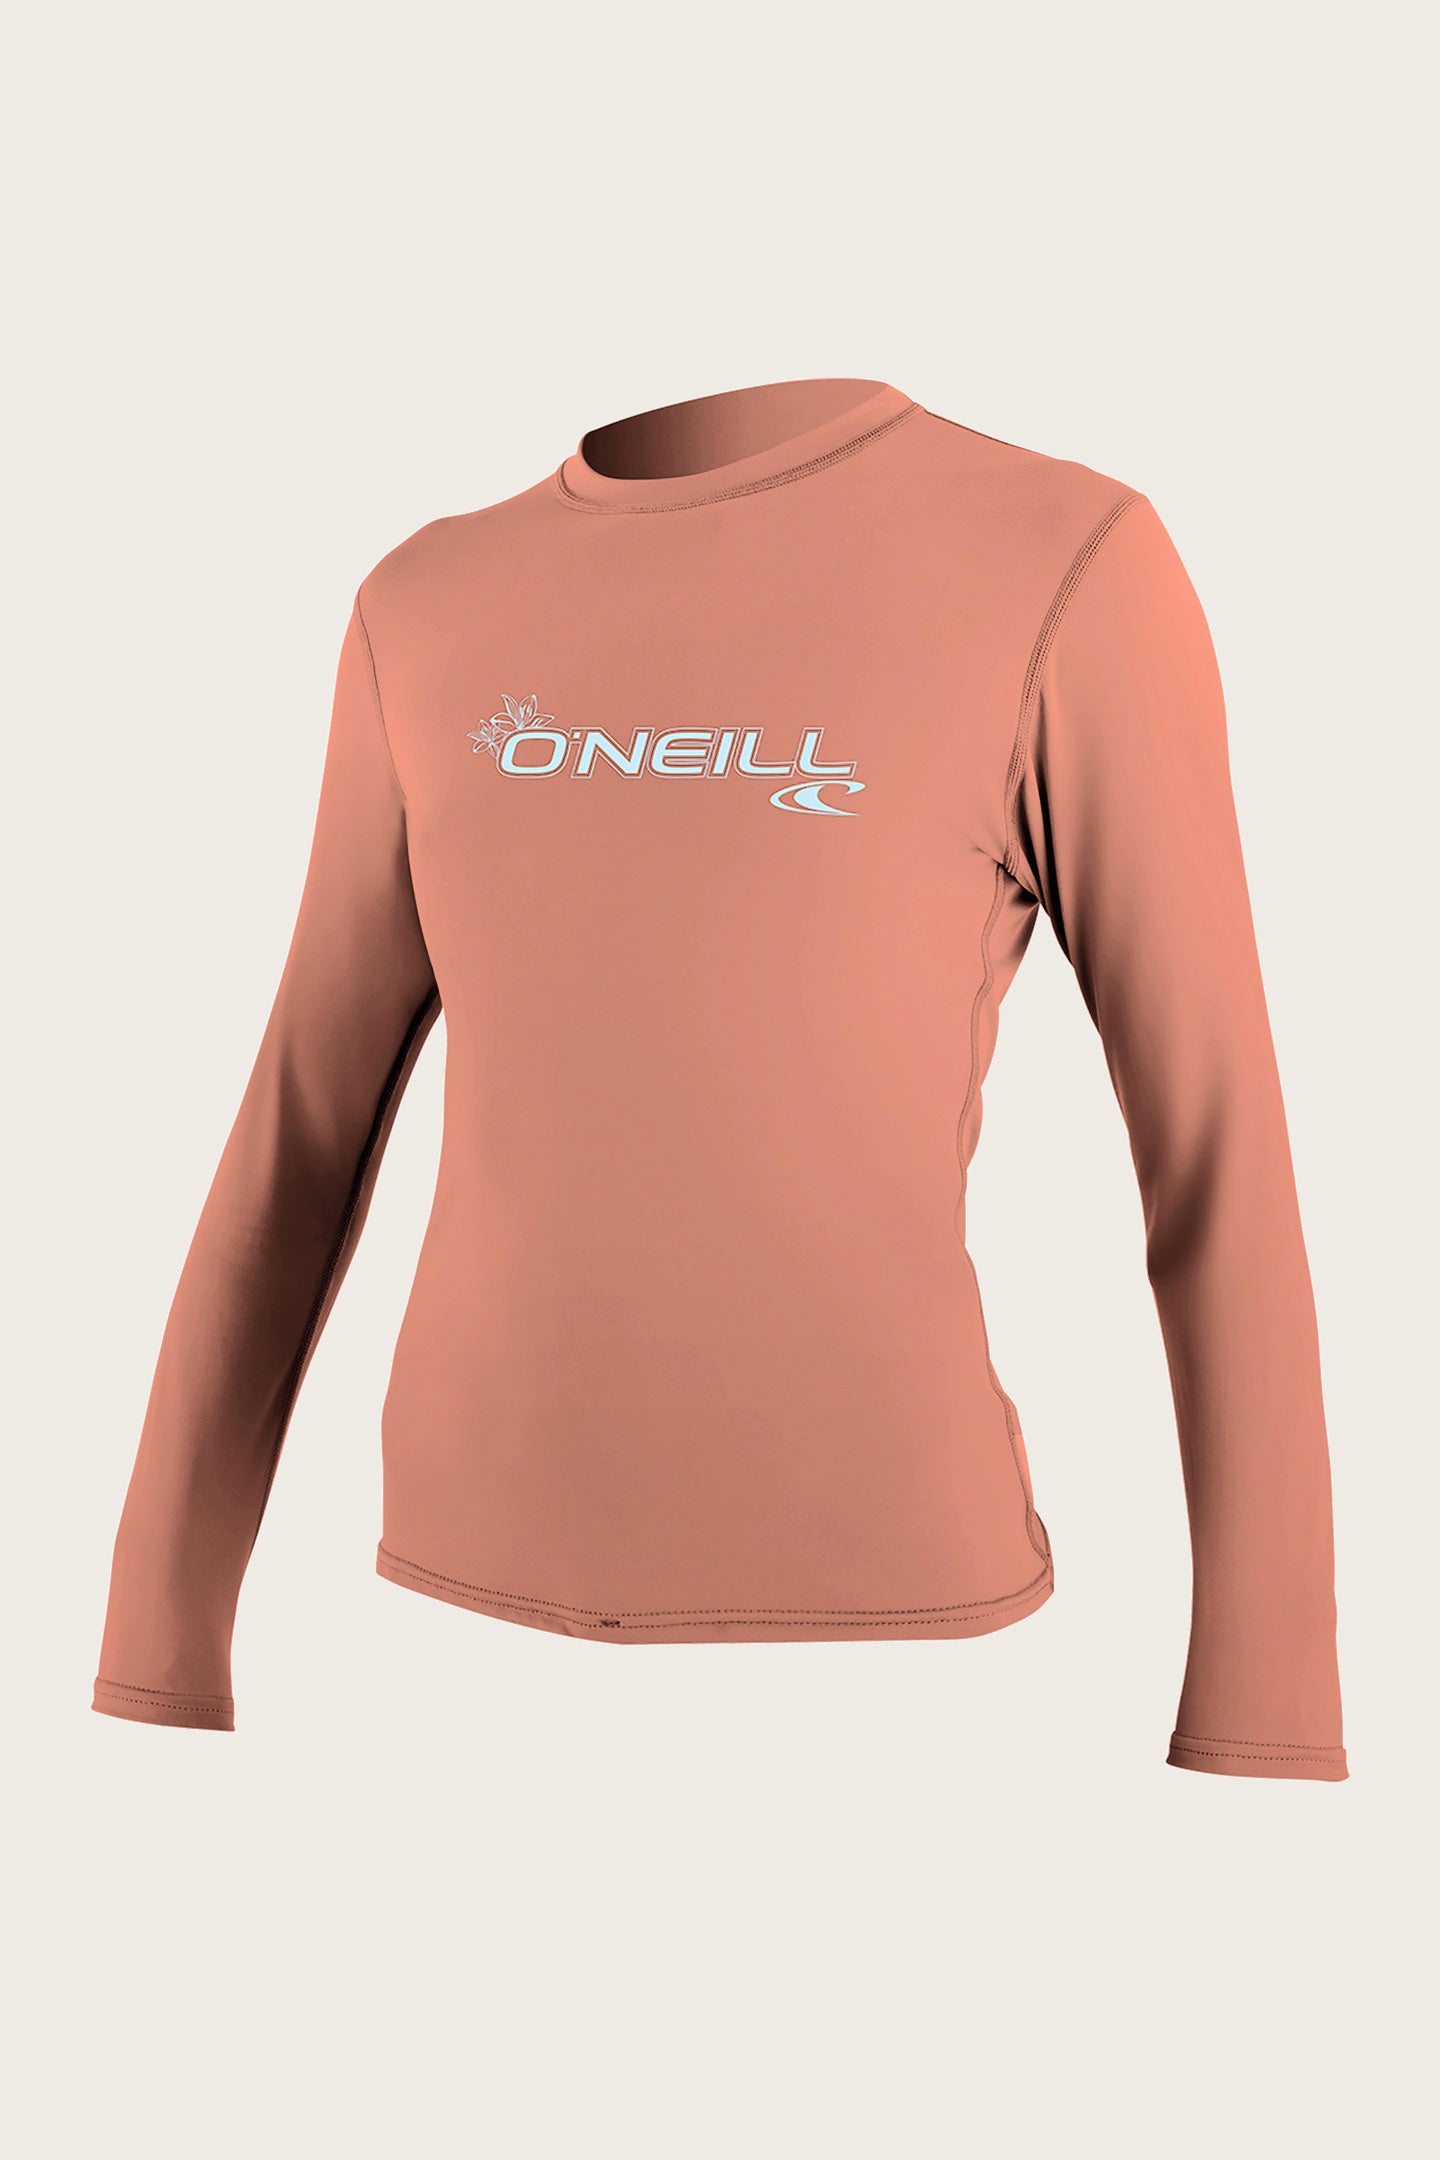 O'Neill Women's Hybrid UPF 50+ Long Sleeve Sun Shirt